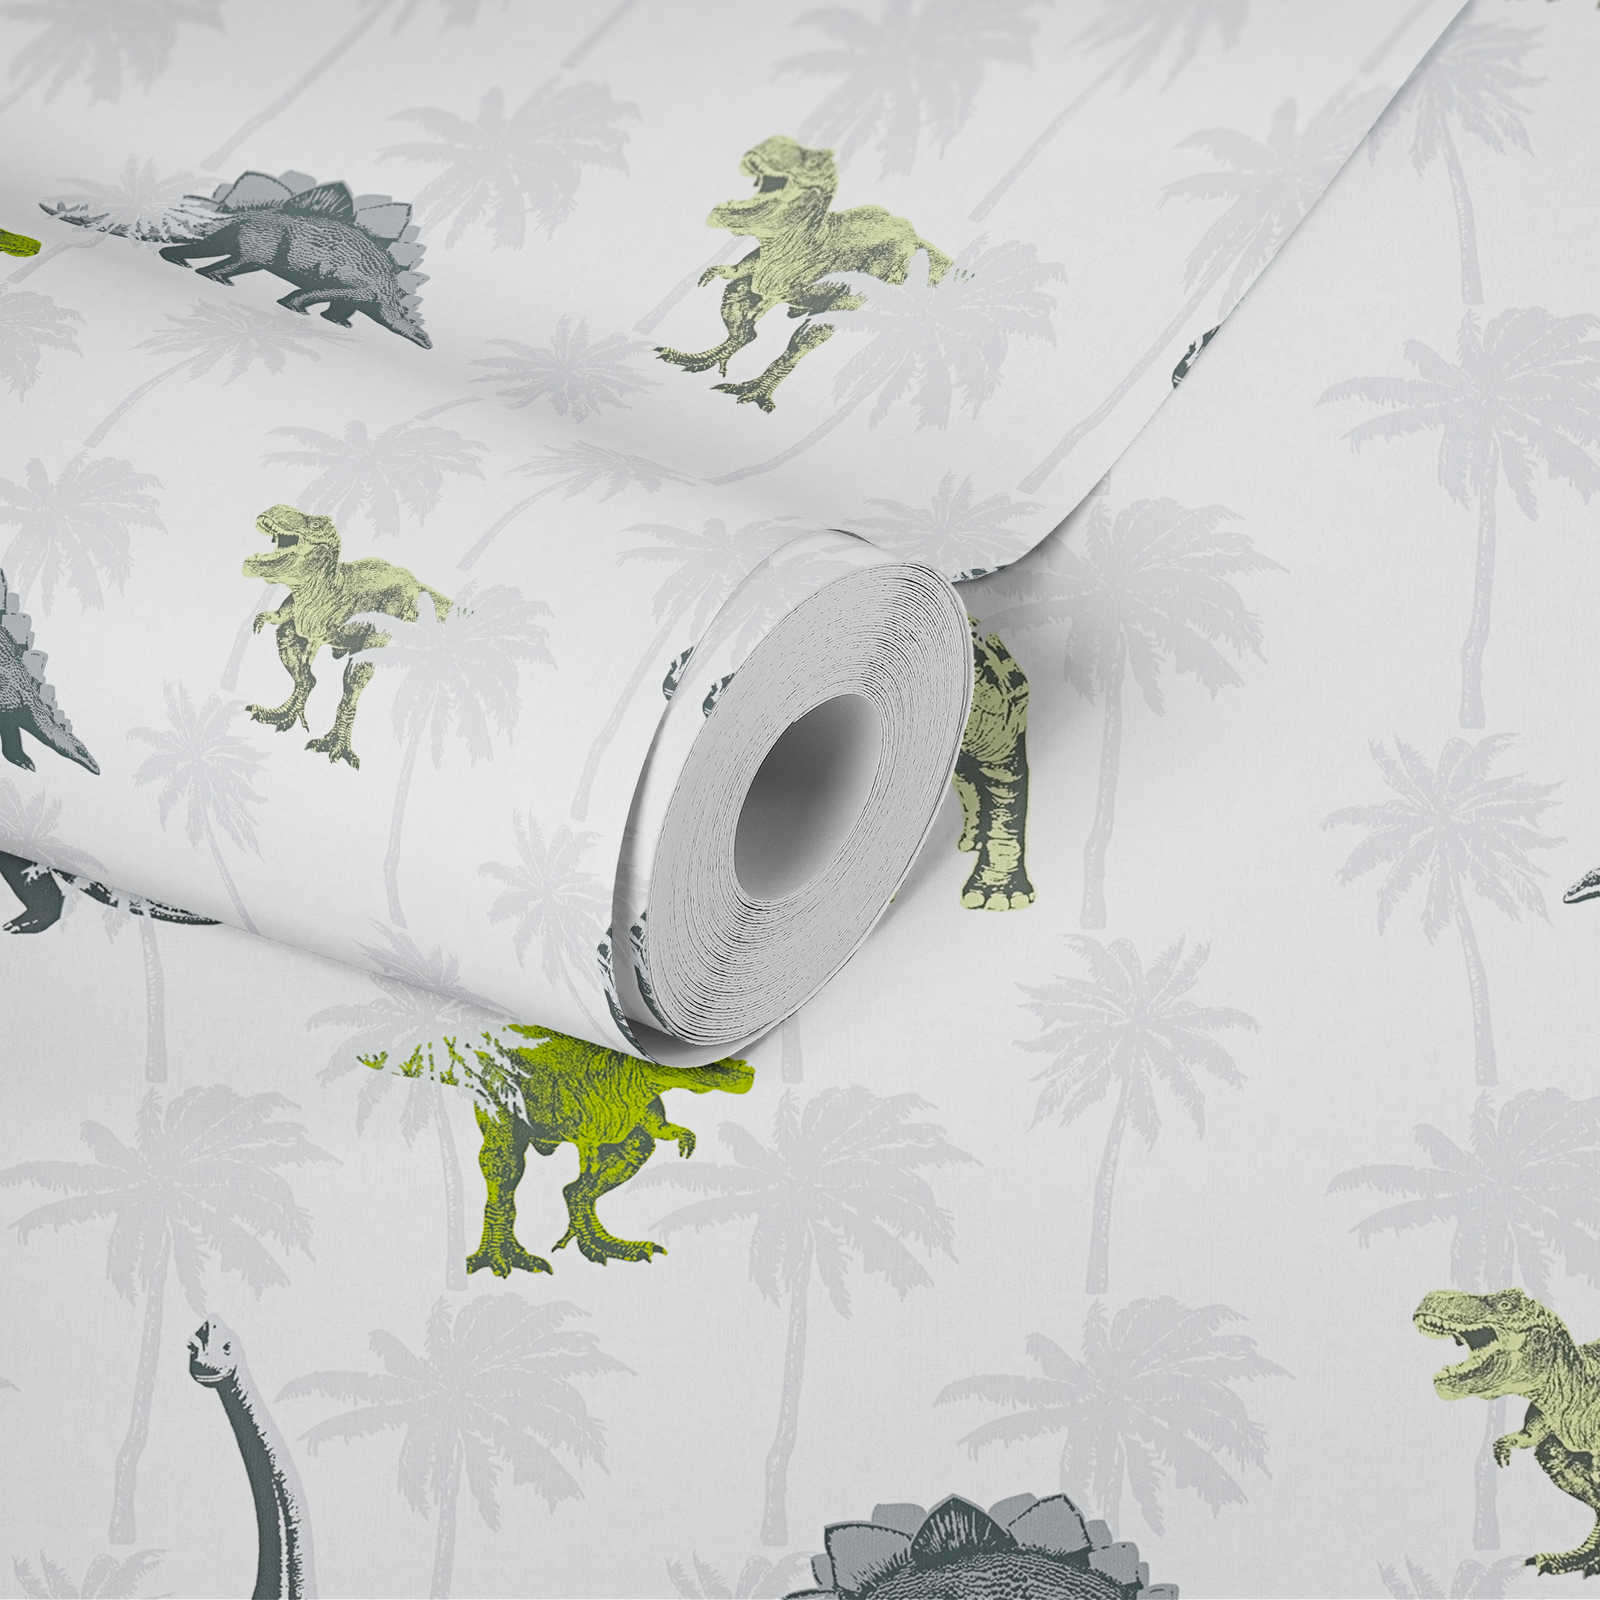             Kinderkamer behang dinosaurus voor jongens - grijs, groen
        